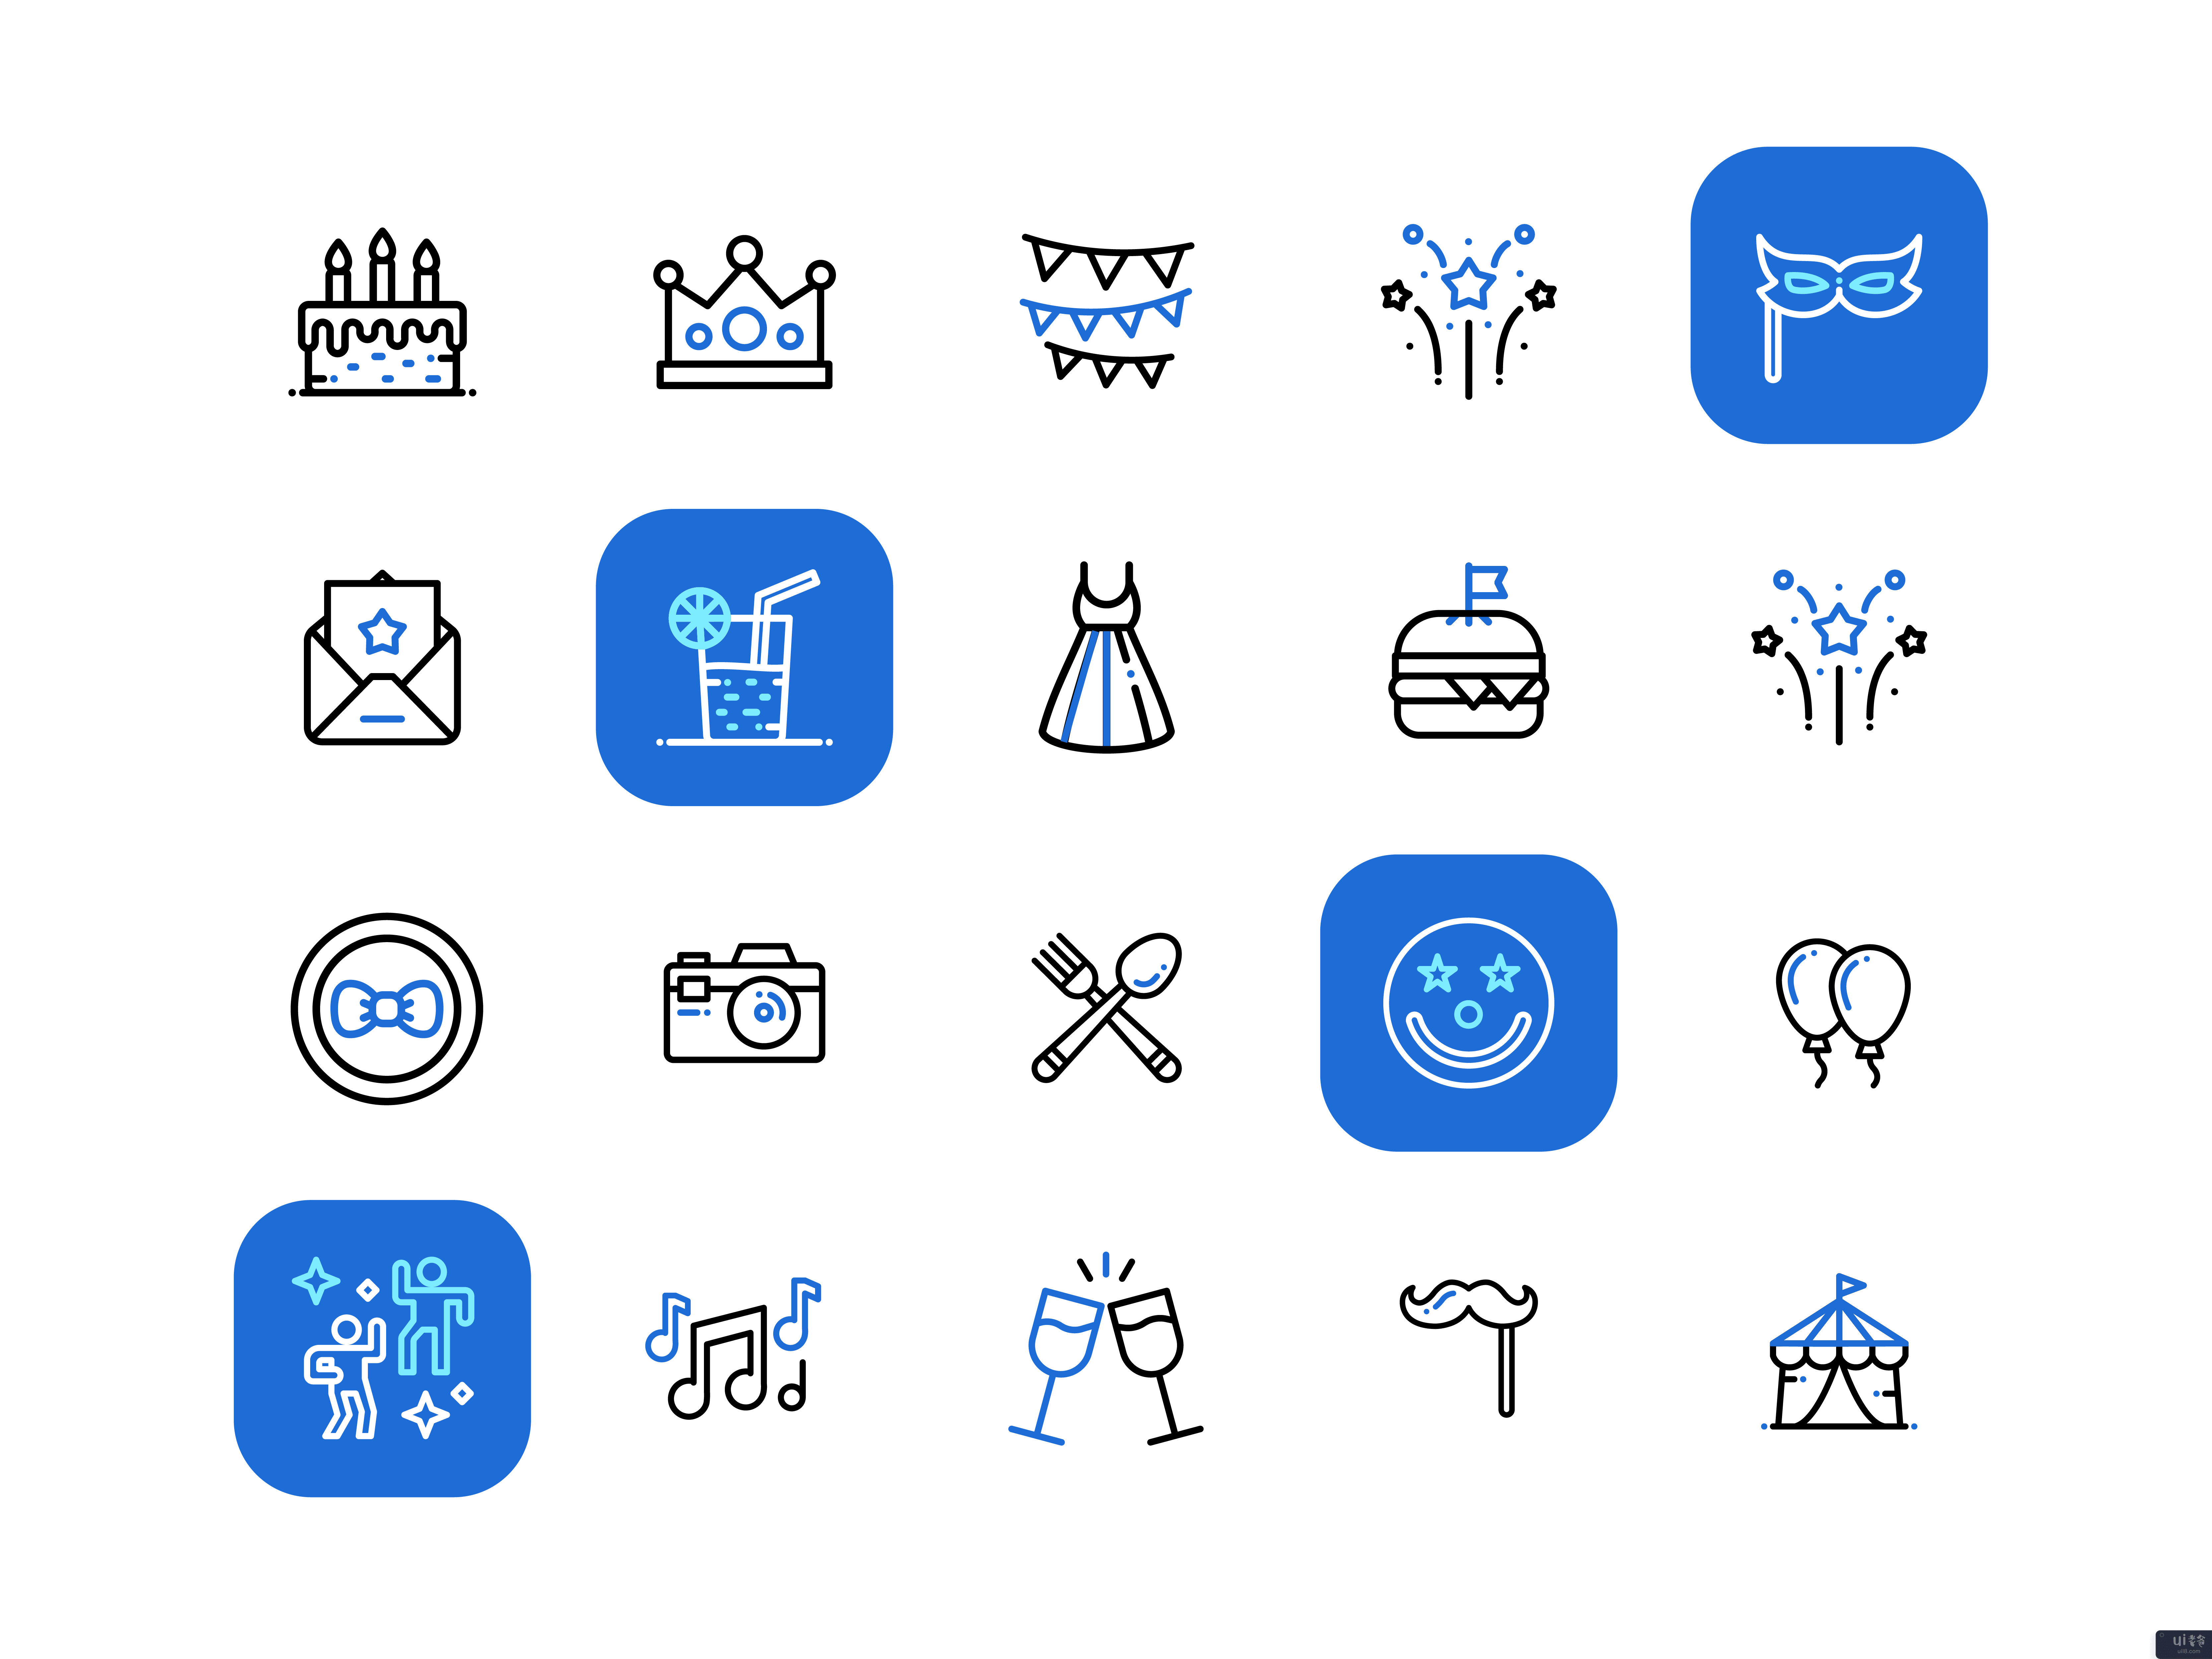 生日、派对、活动和庆典图标包 - 高级图标包(Birthday, Party, Event and Celebration Icon Pack - Premium Icon Pack)插图